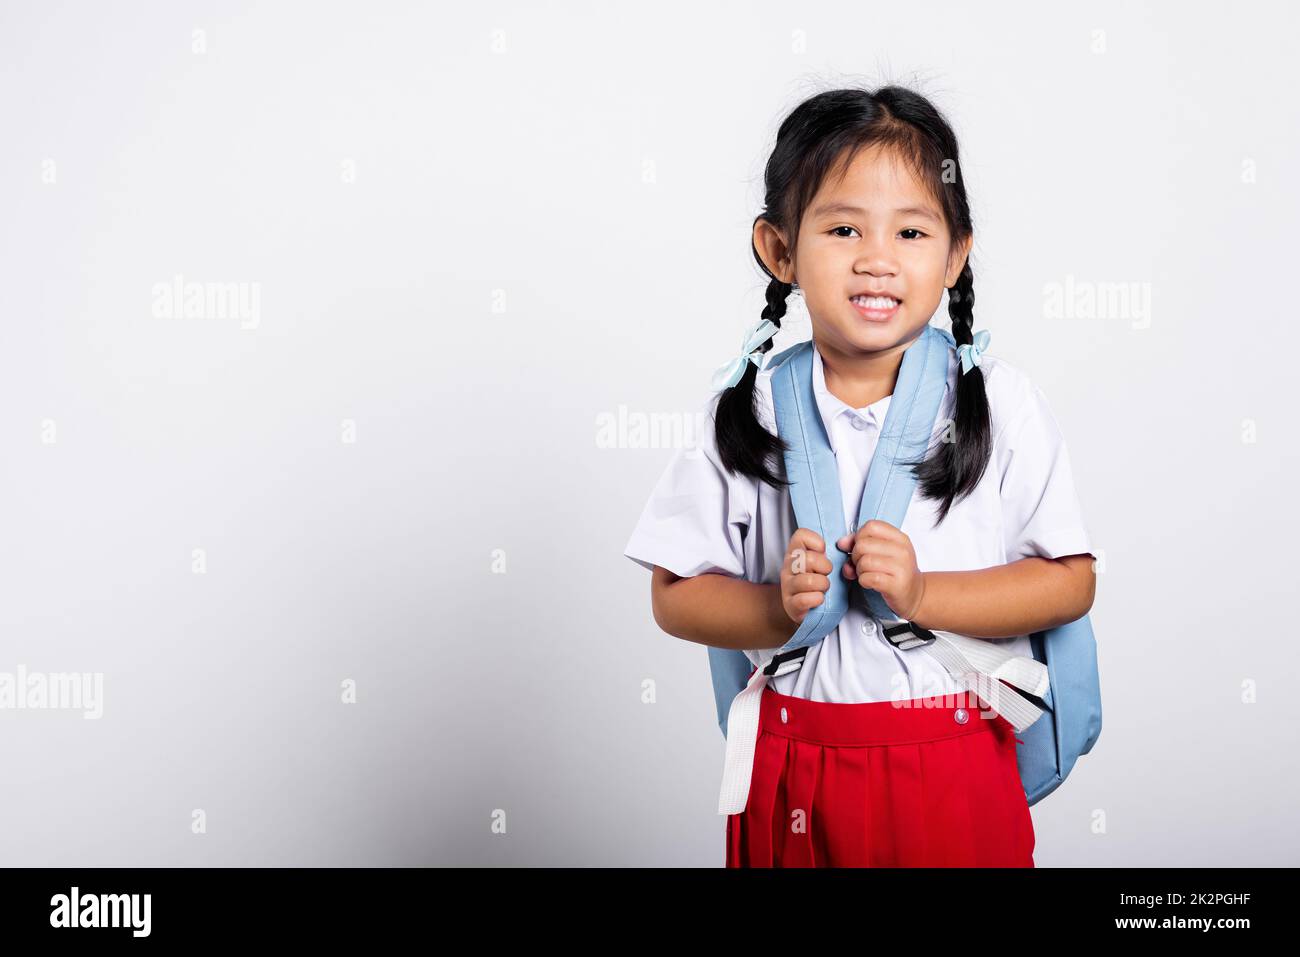 Asiatische liebenswert Kleinkind lächelnd glücklich tragen Student thai uniform roten Rock stehen Stockfoto